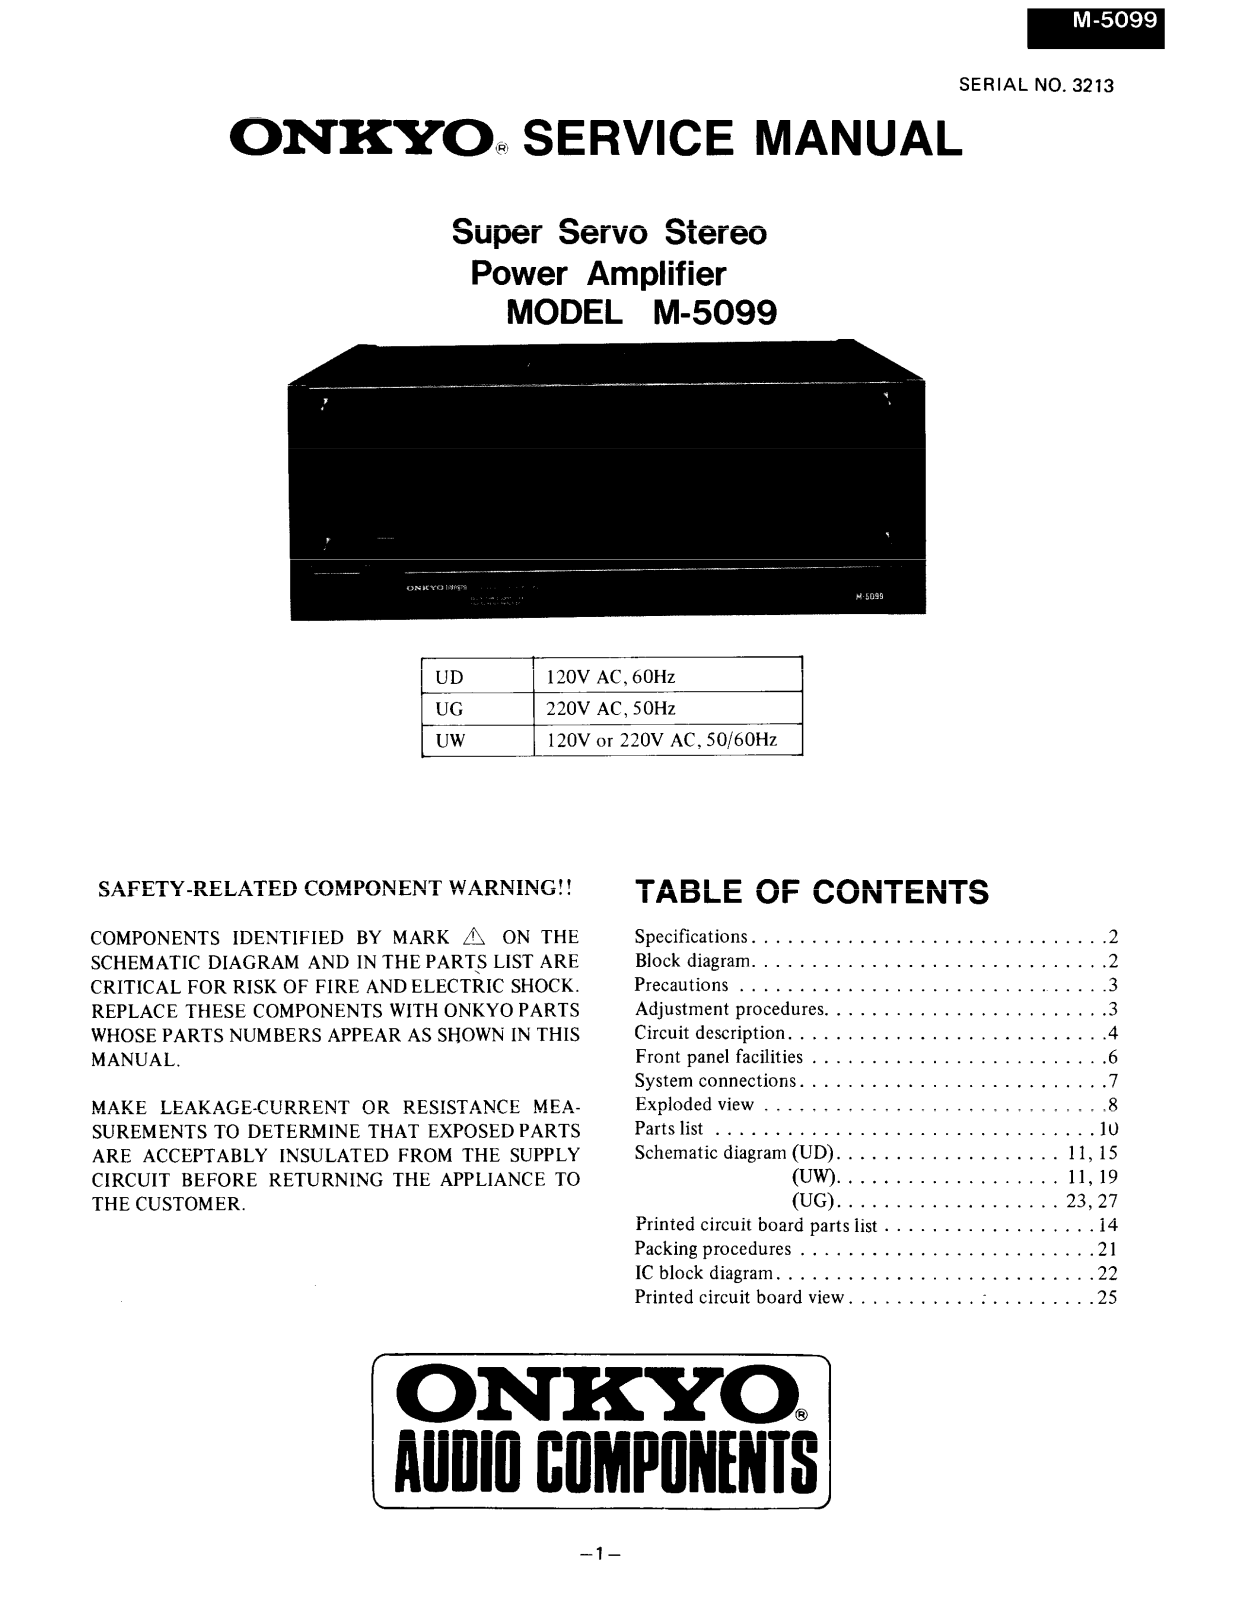 Onkyo M-5090 Service manual